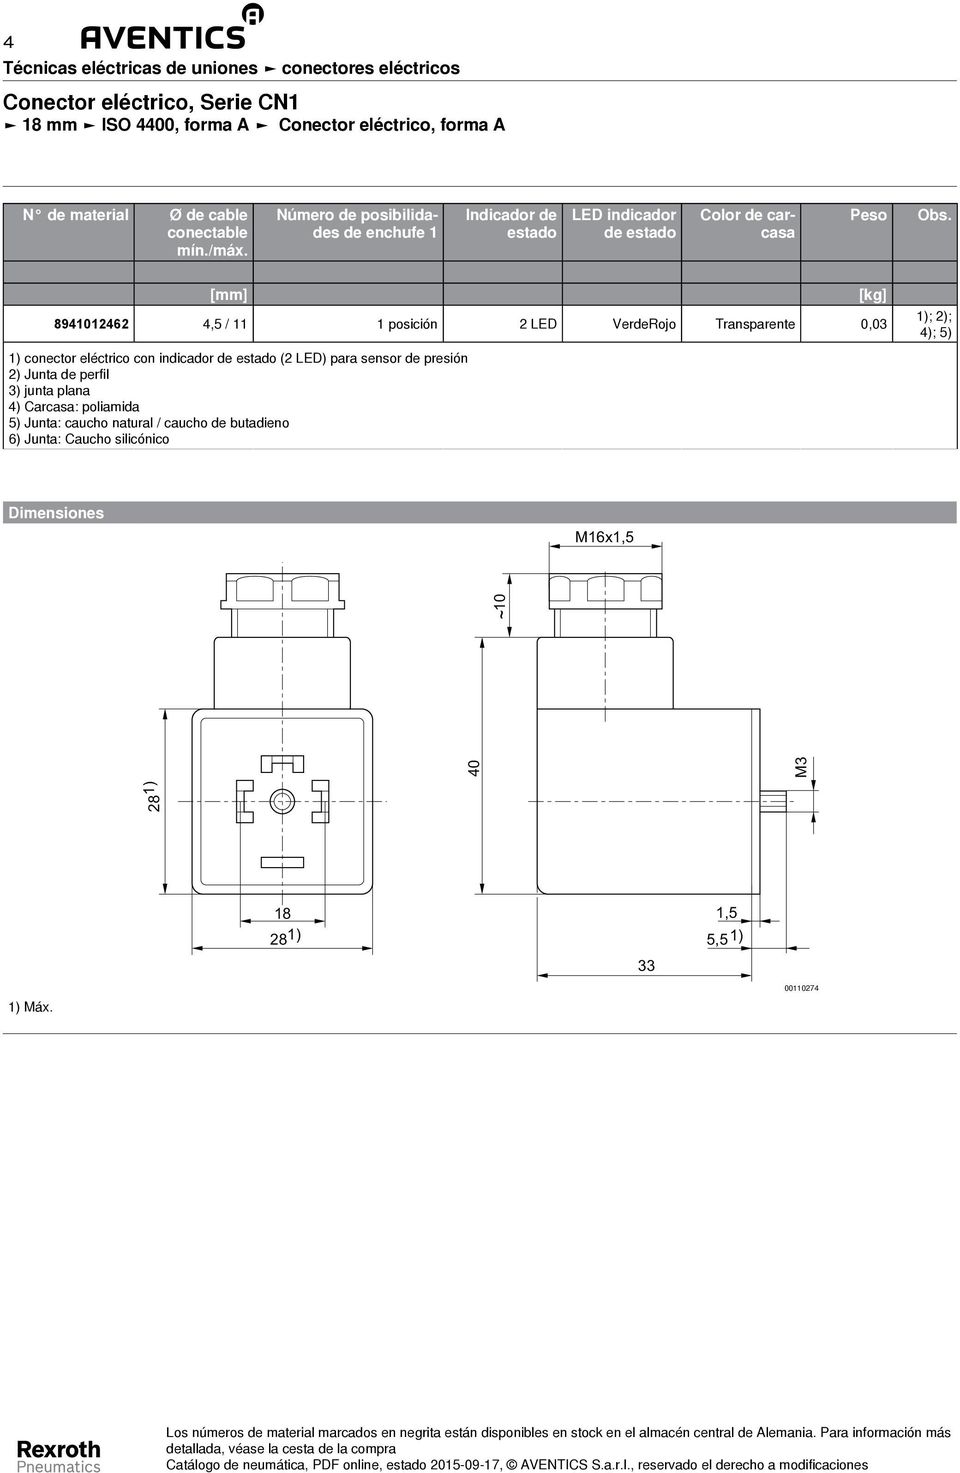 [mm] 894046 4,5 / posición LED VerdeRojo Transparente 0,0 [kg] ); ); 4); 5) ) conector eléctrico con indicador de estado ( LED) para sensor de presión ) Junta de perfil ) junta plana